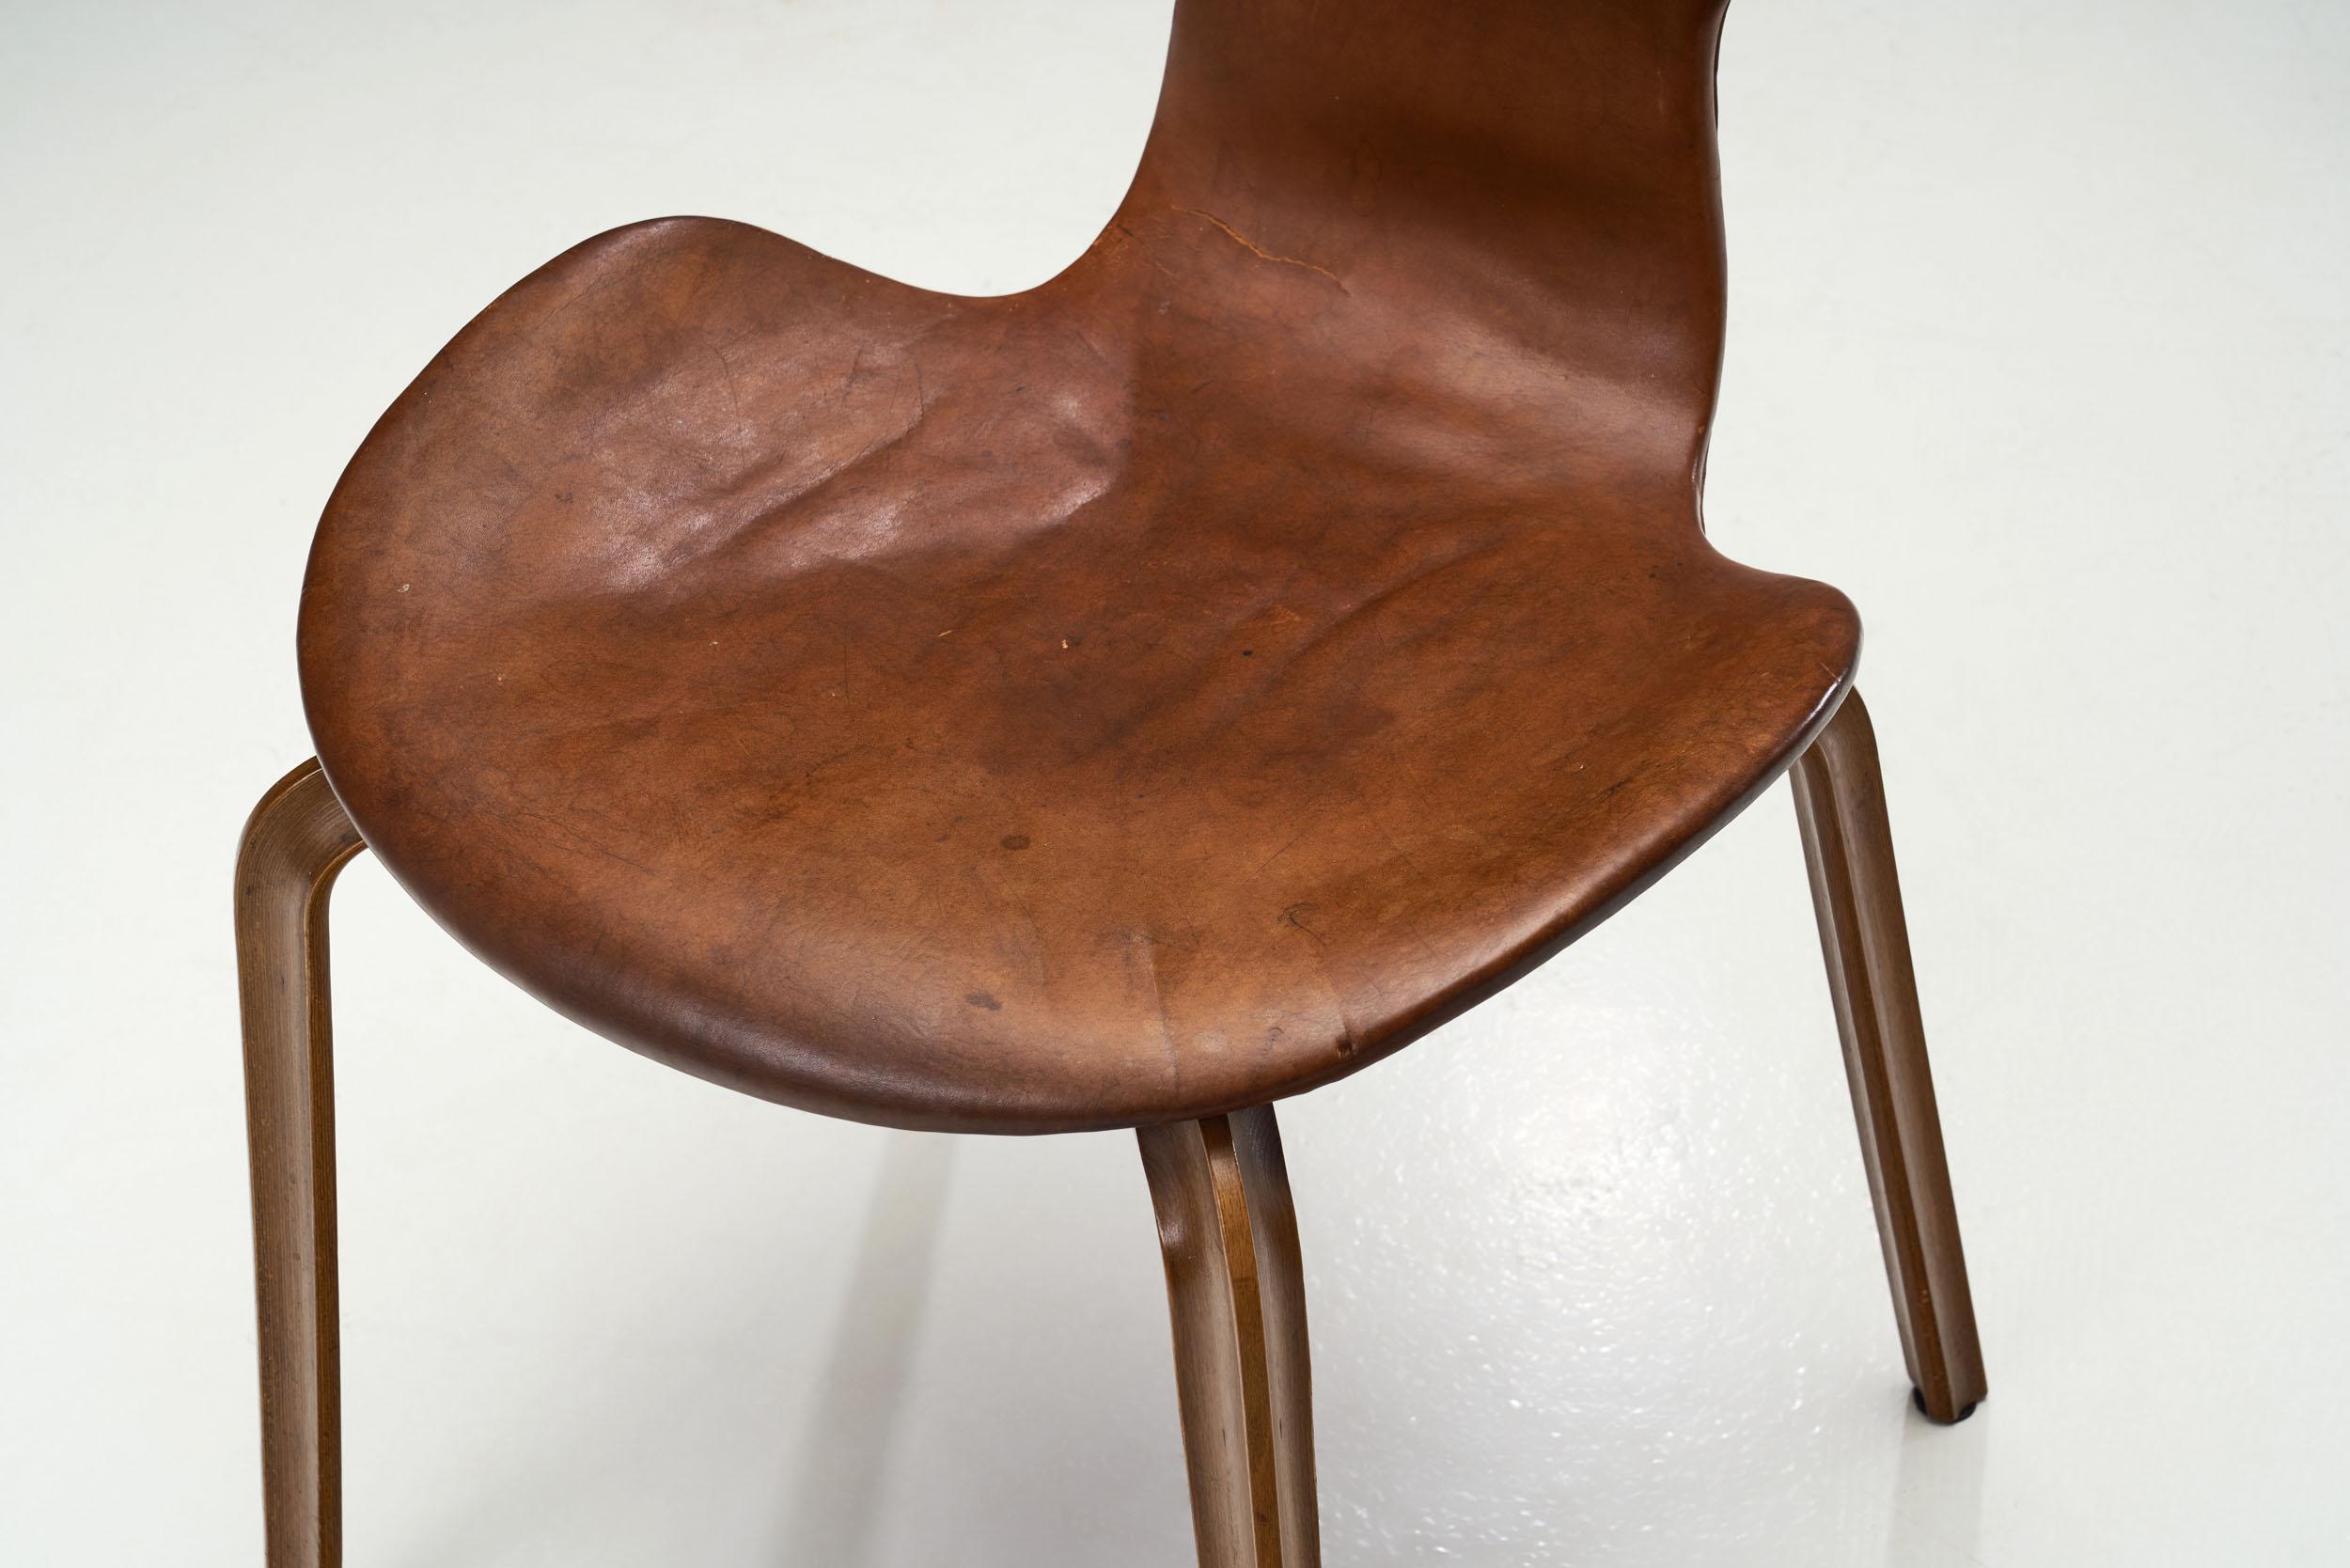 Arne Jacobsen “Grand Prix” Chairs for Fritz Hansen, Denmark 1950s For Sale 2